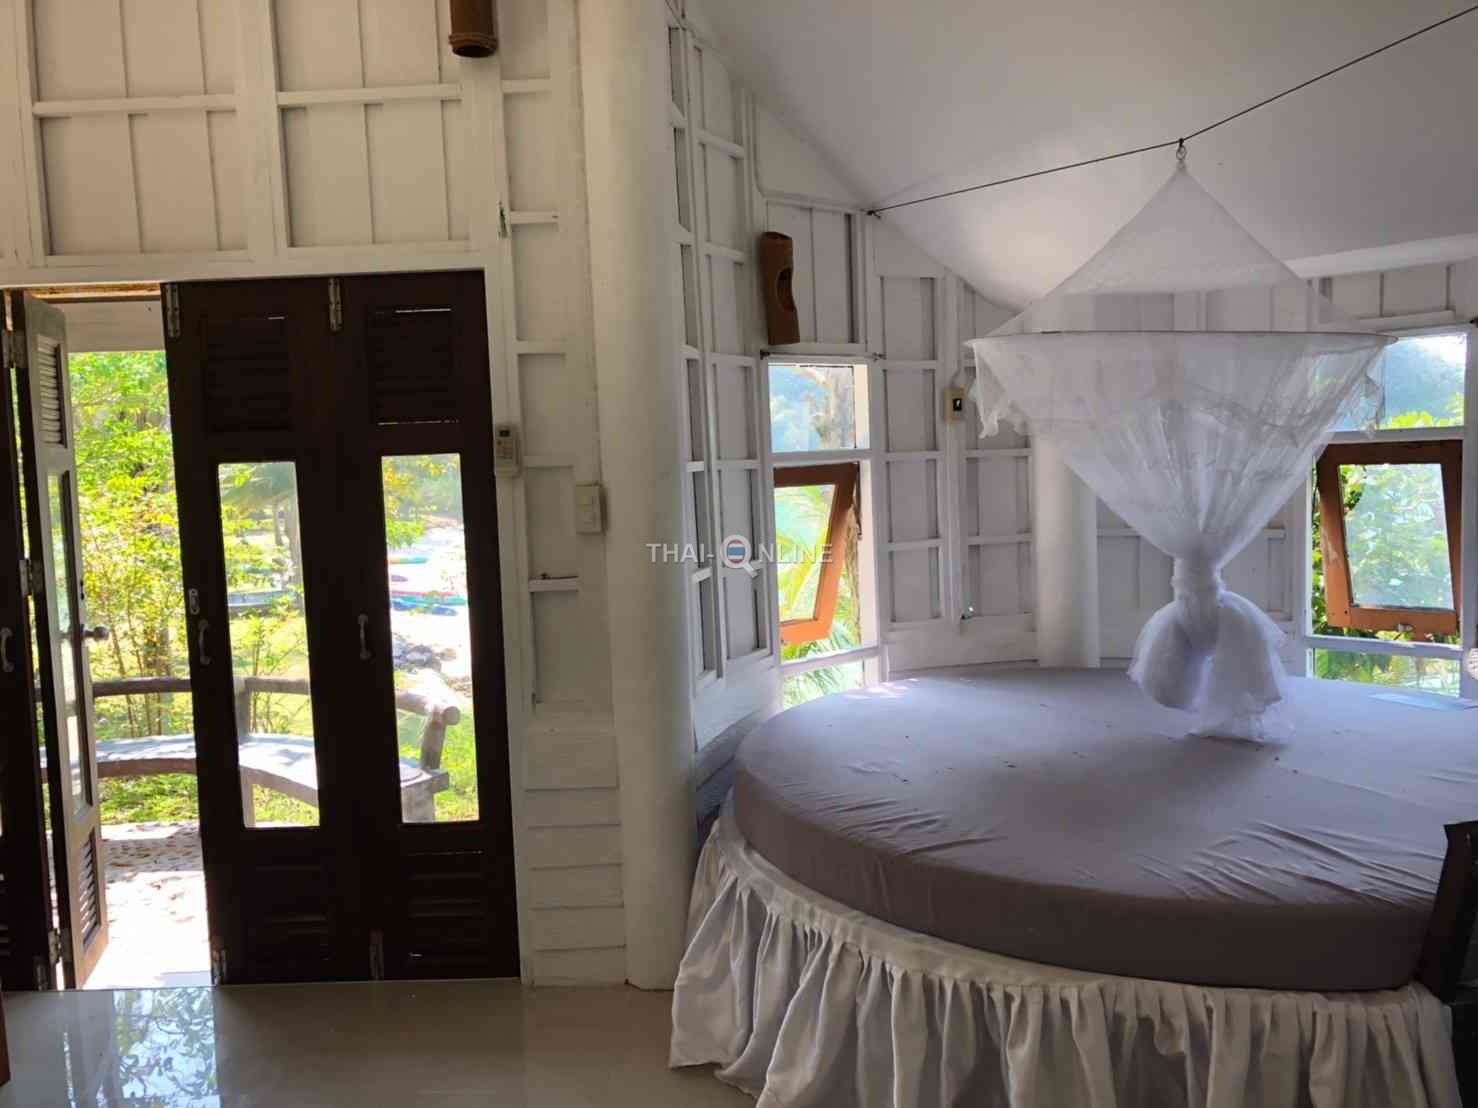 Отель-бунгало Пхи Пхи Резорт на острове Кох Нгам цена экскурсии 2019 г